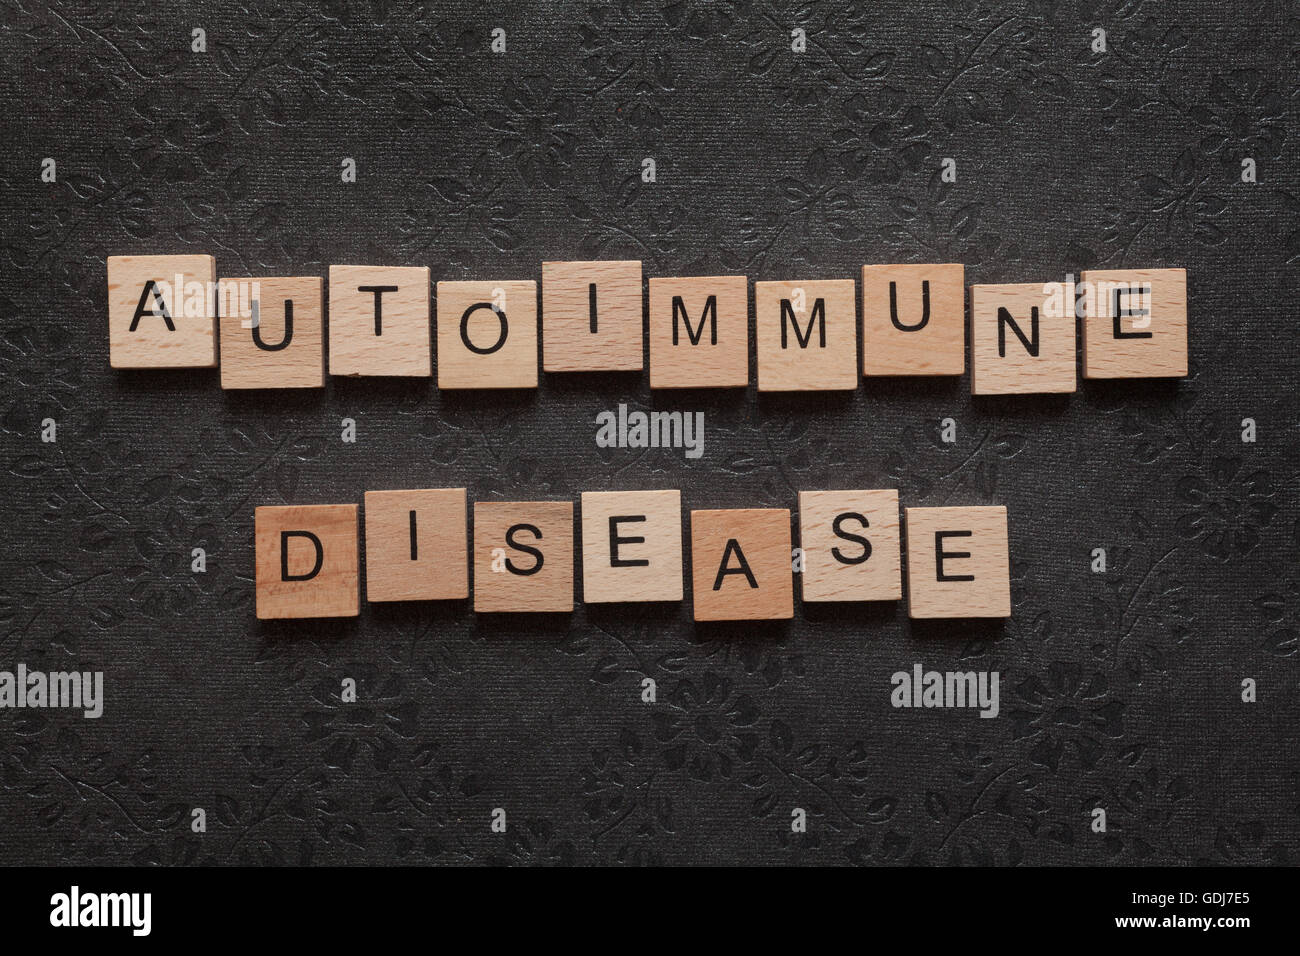 Die Wort Autoimmunerkrankung gebildet mit Holzbuchstaben auf dunklem Hintergrund Stockfoto